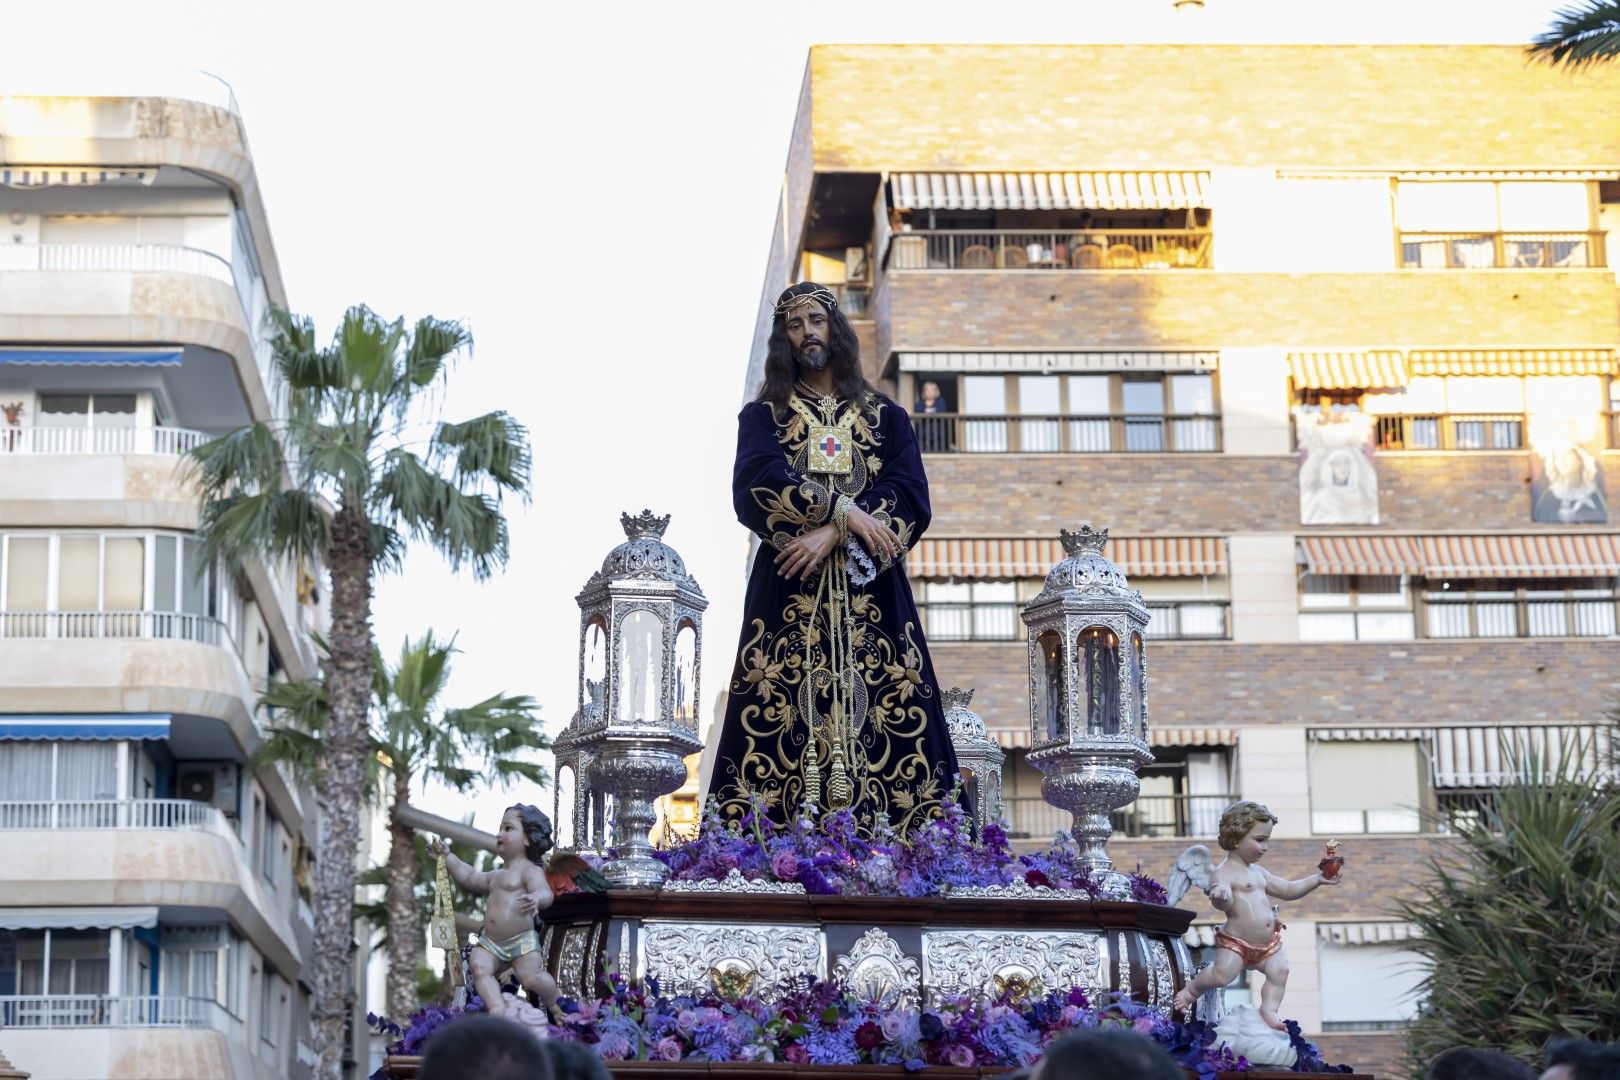 La procesión del Santo Entierro de Cristo del Viernes Santo en Torrevieja, en imágenes